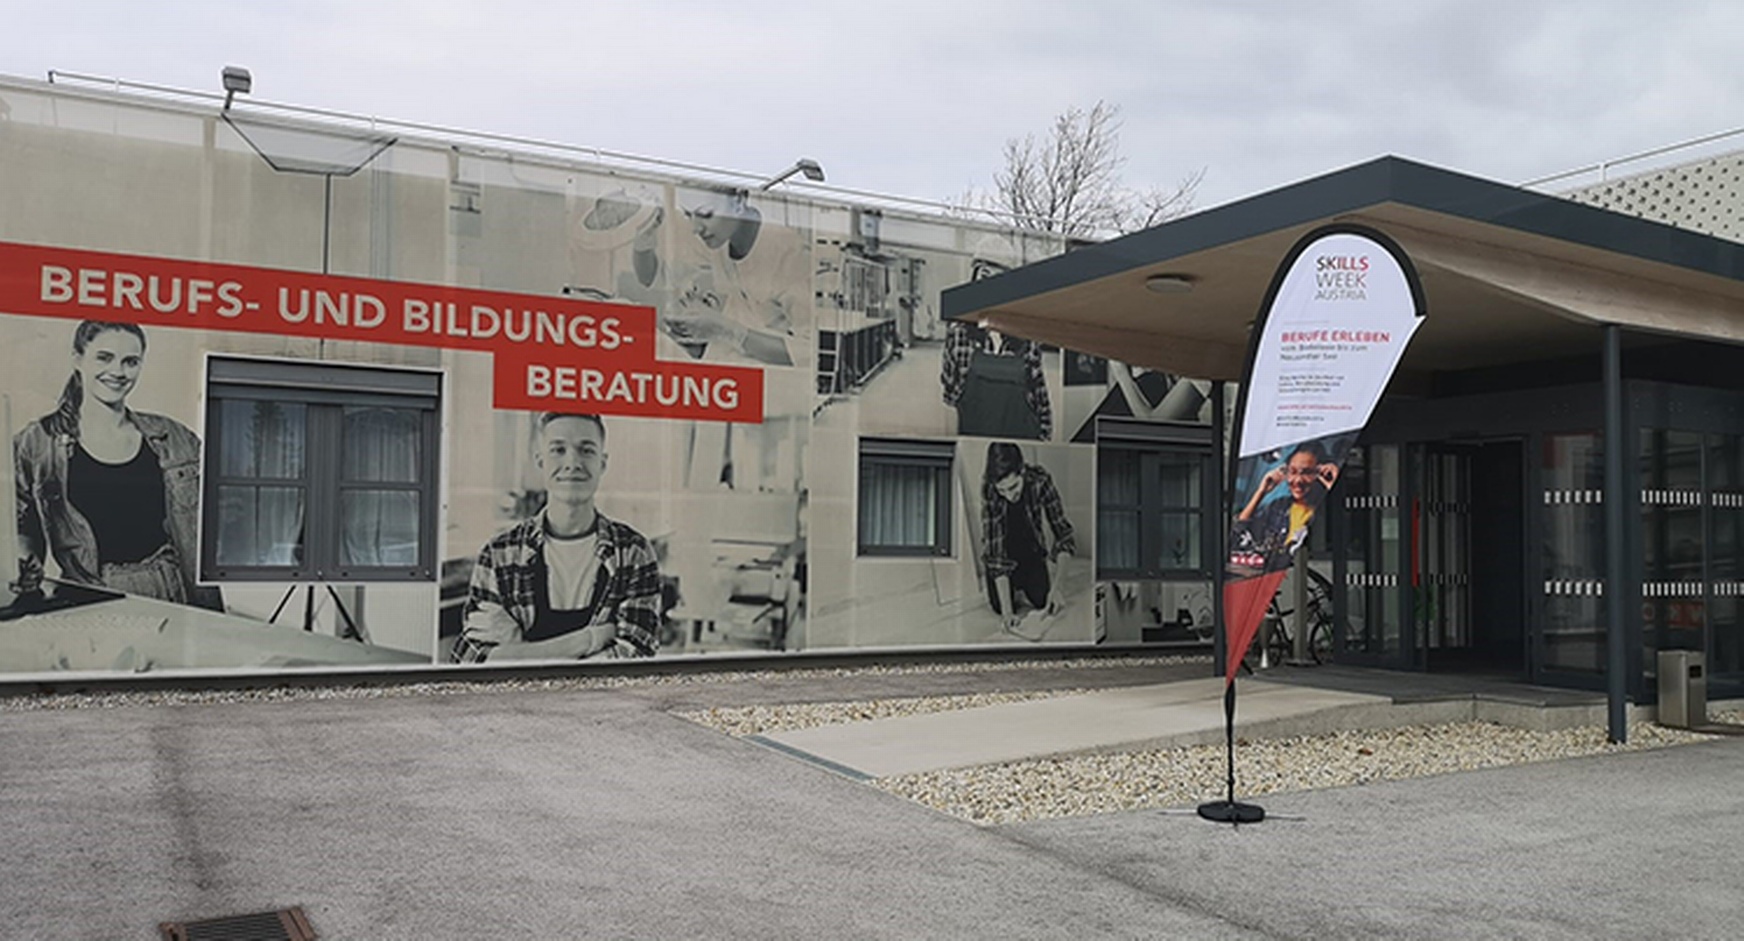 Eingangsbereich mit Fahne und großem Plakat zur Skills Week Austria